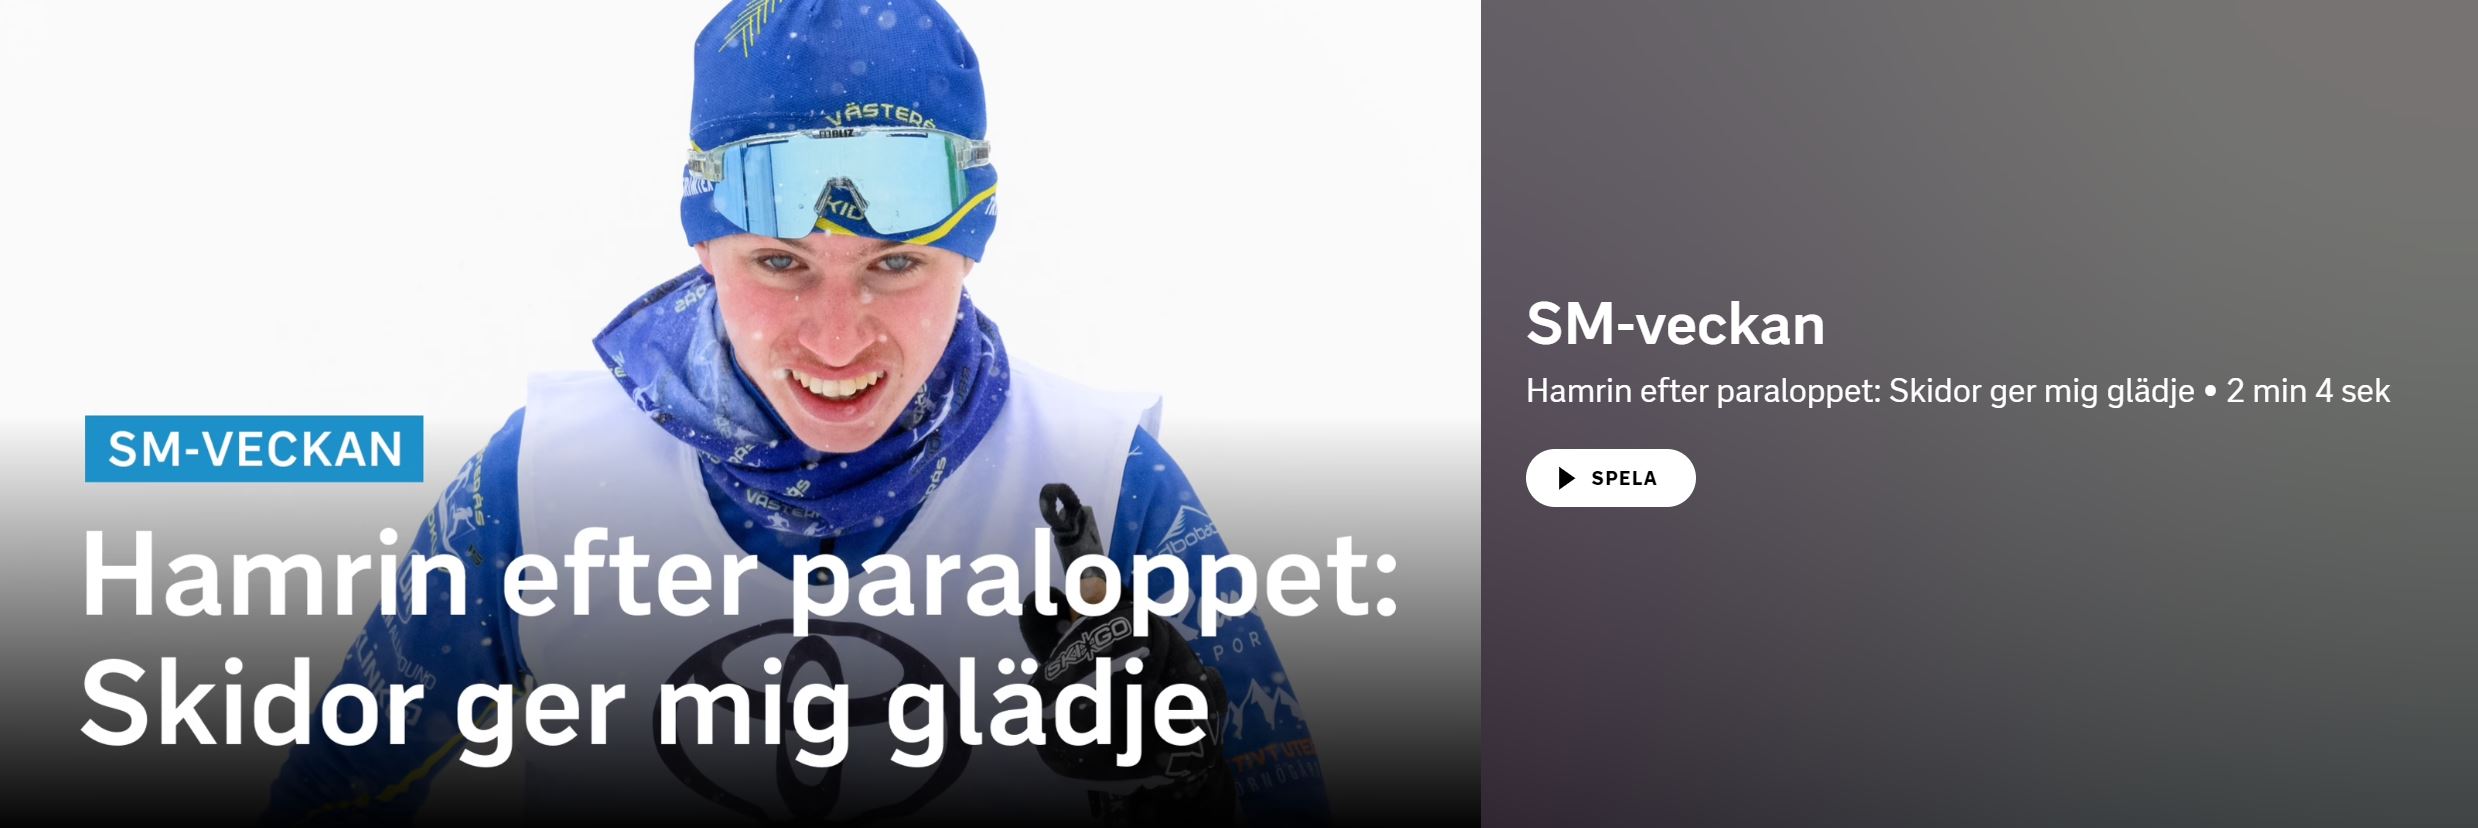 Bild på Pontus Hamrin med texten "Skidor ger mig glädje"